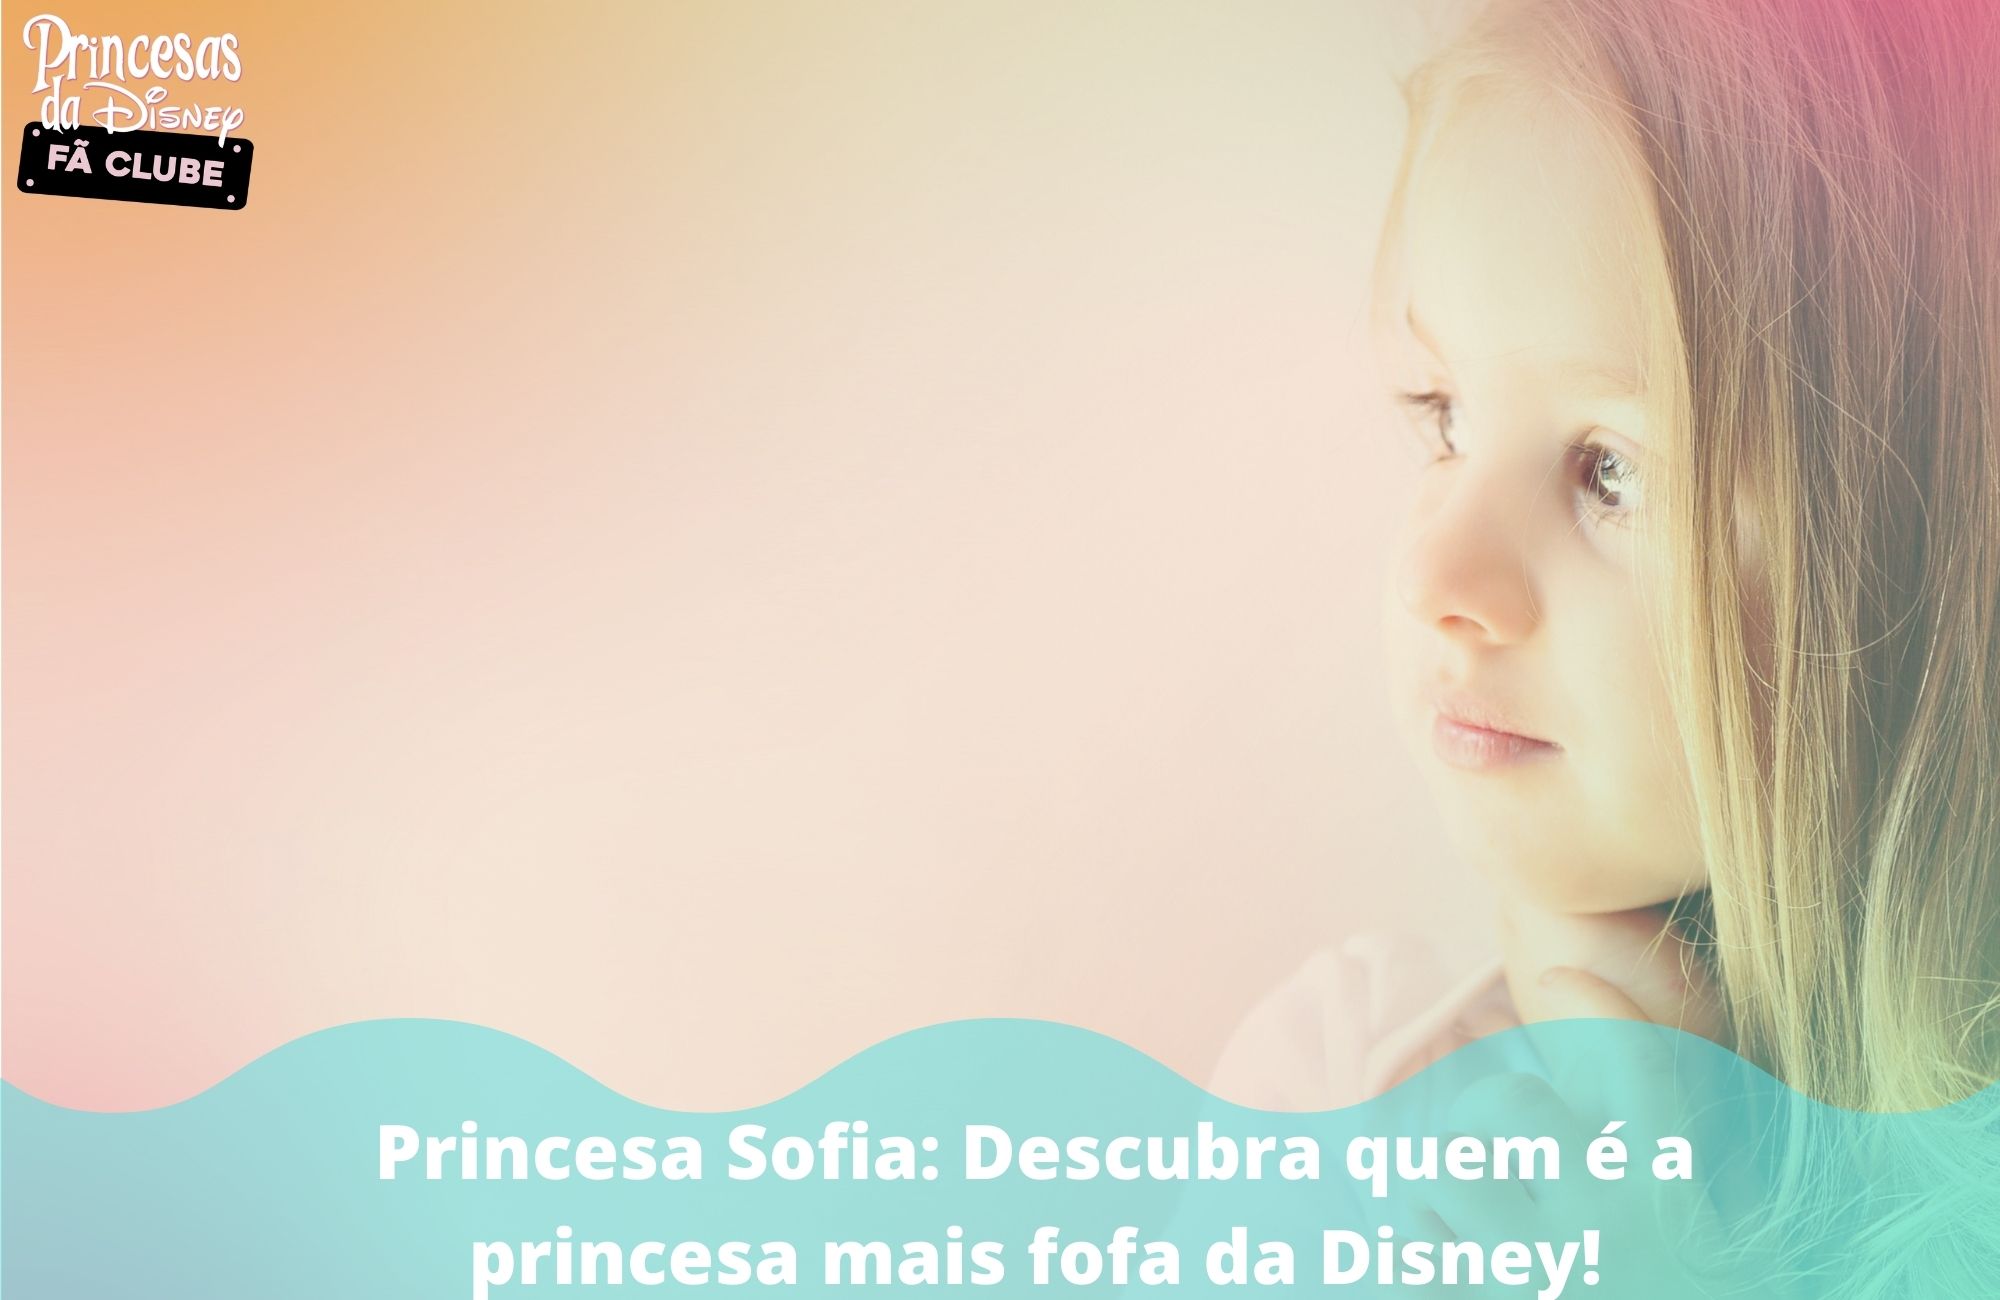 Princesa Sofia: Descubra quem é a princesa mais fofa da Disney!